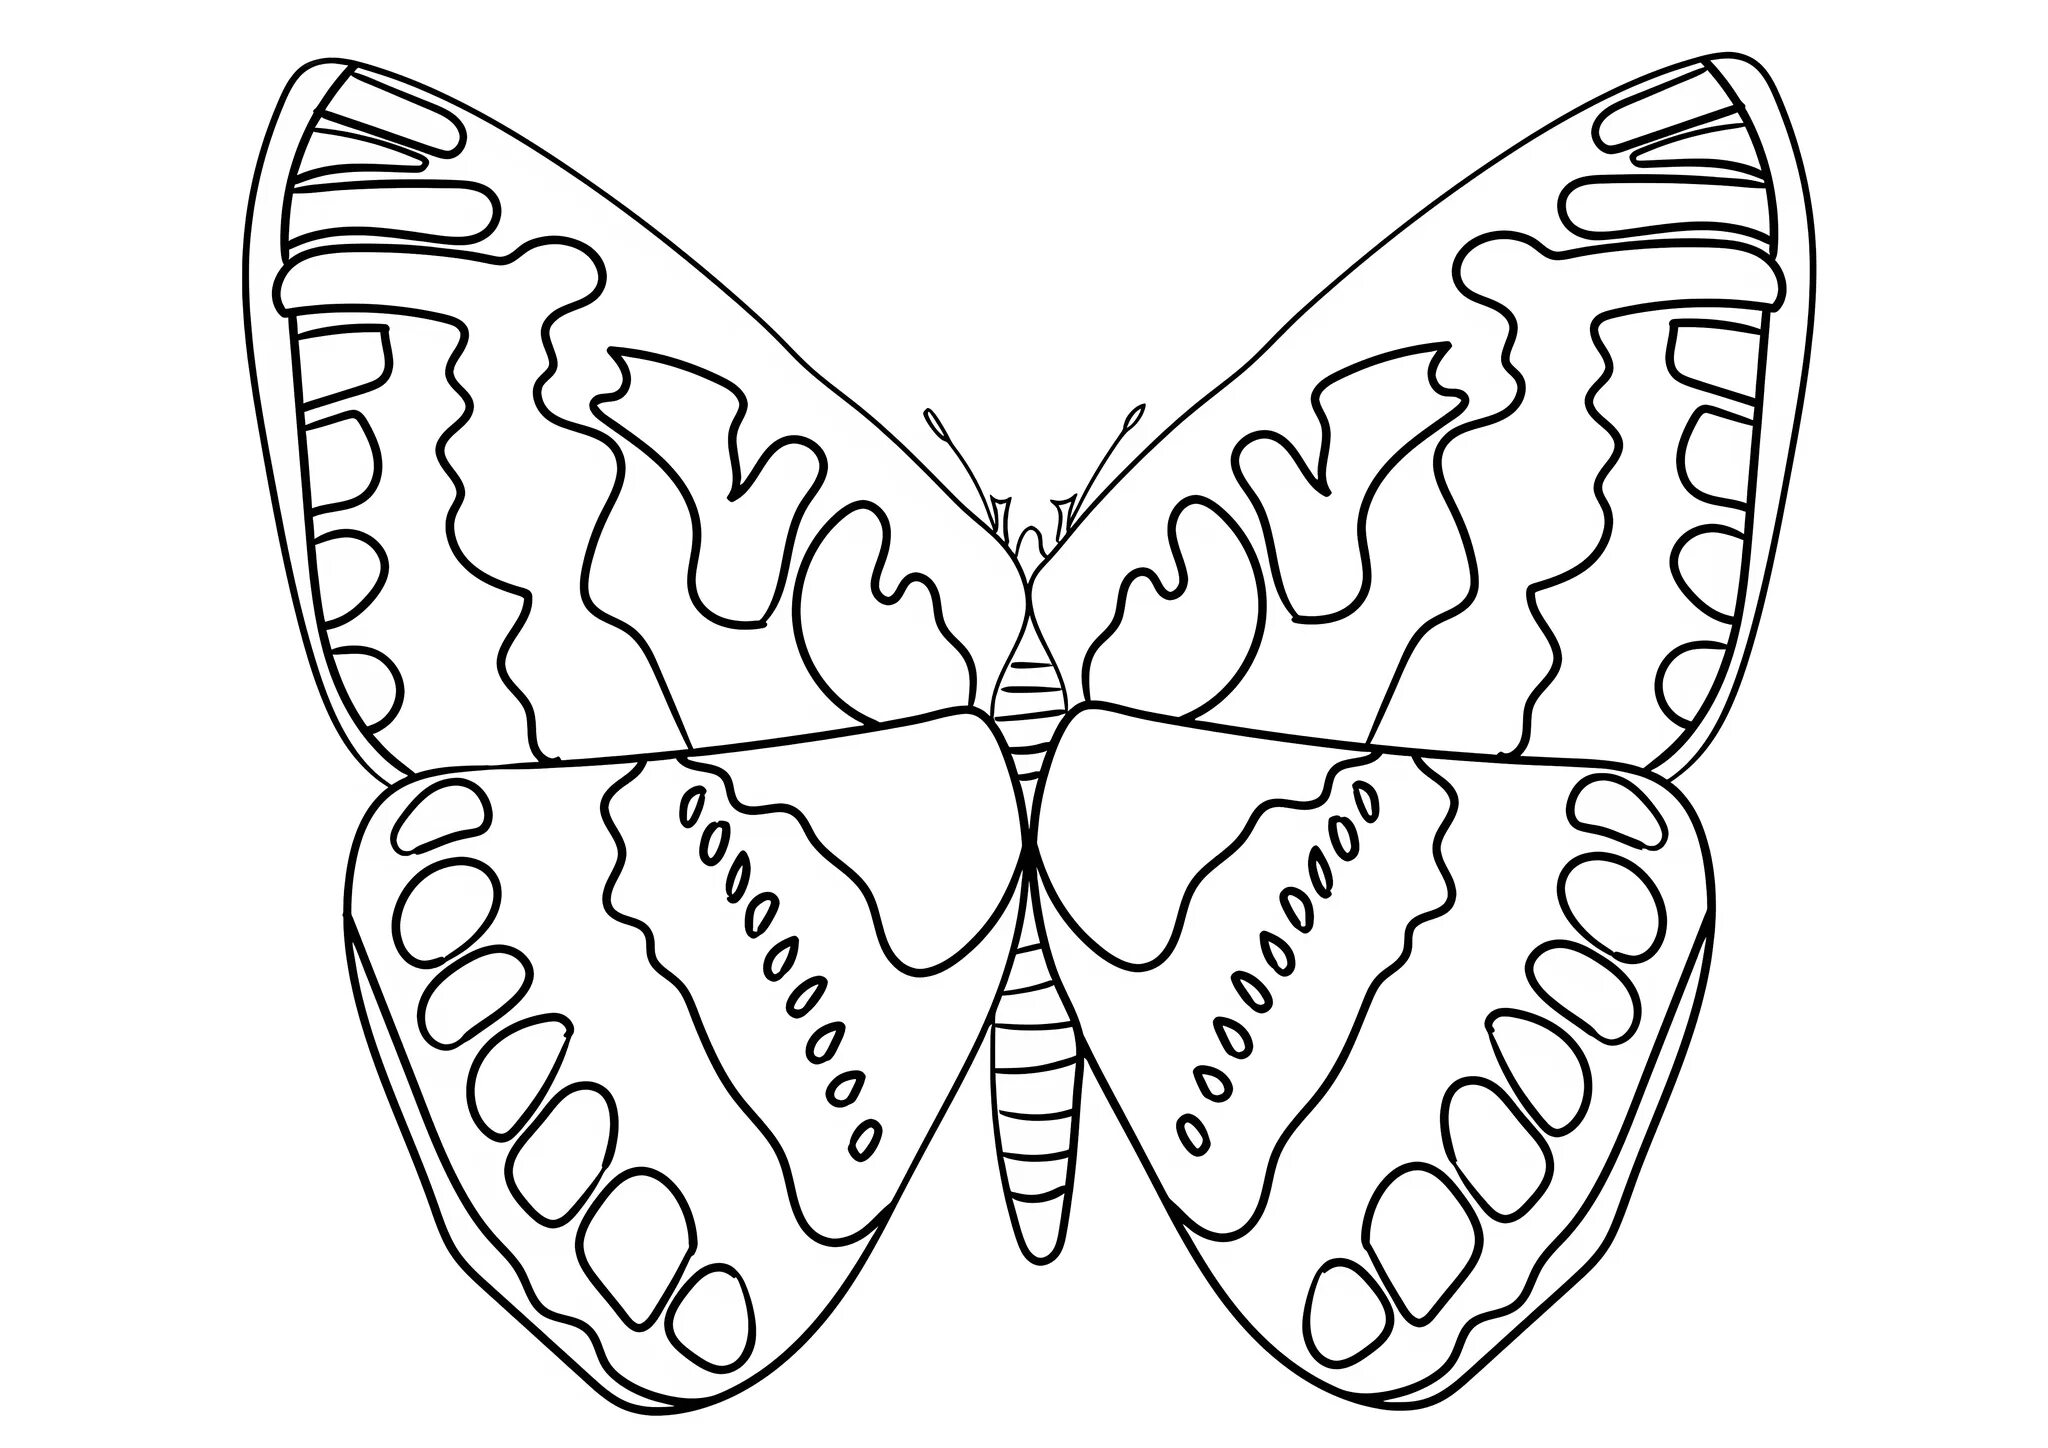 Раскраска на 6 листов. Раскраска "бабочки". Бабочка раскраска для детей. Бабочка раскраска для малышей. Рисунок бабочки для раскрашивания.